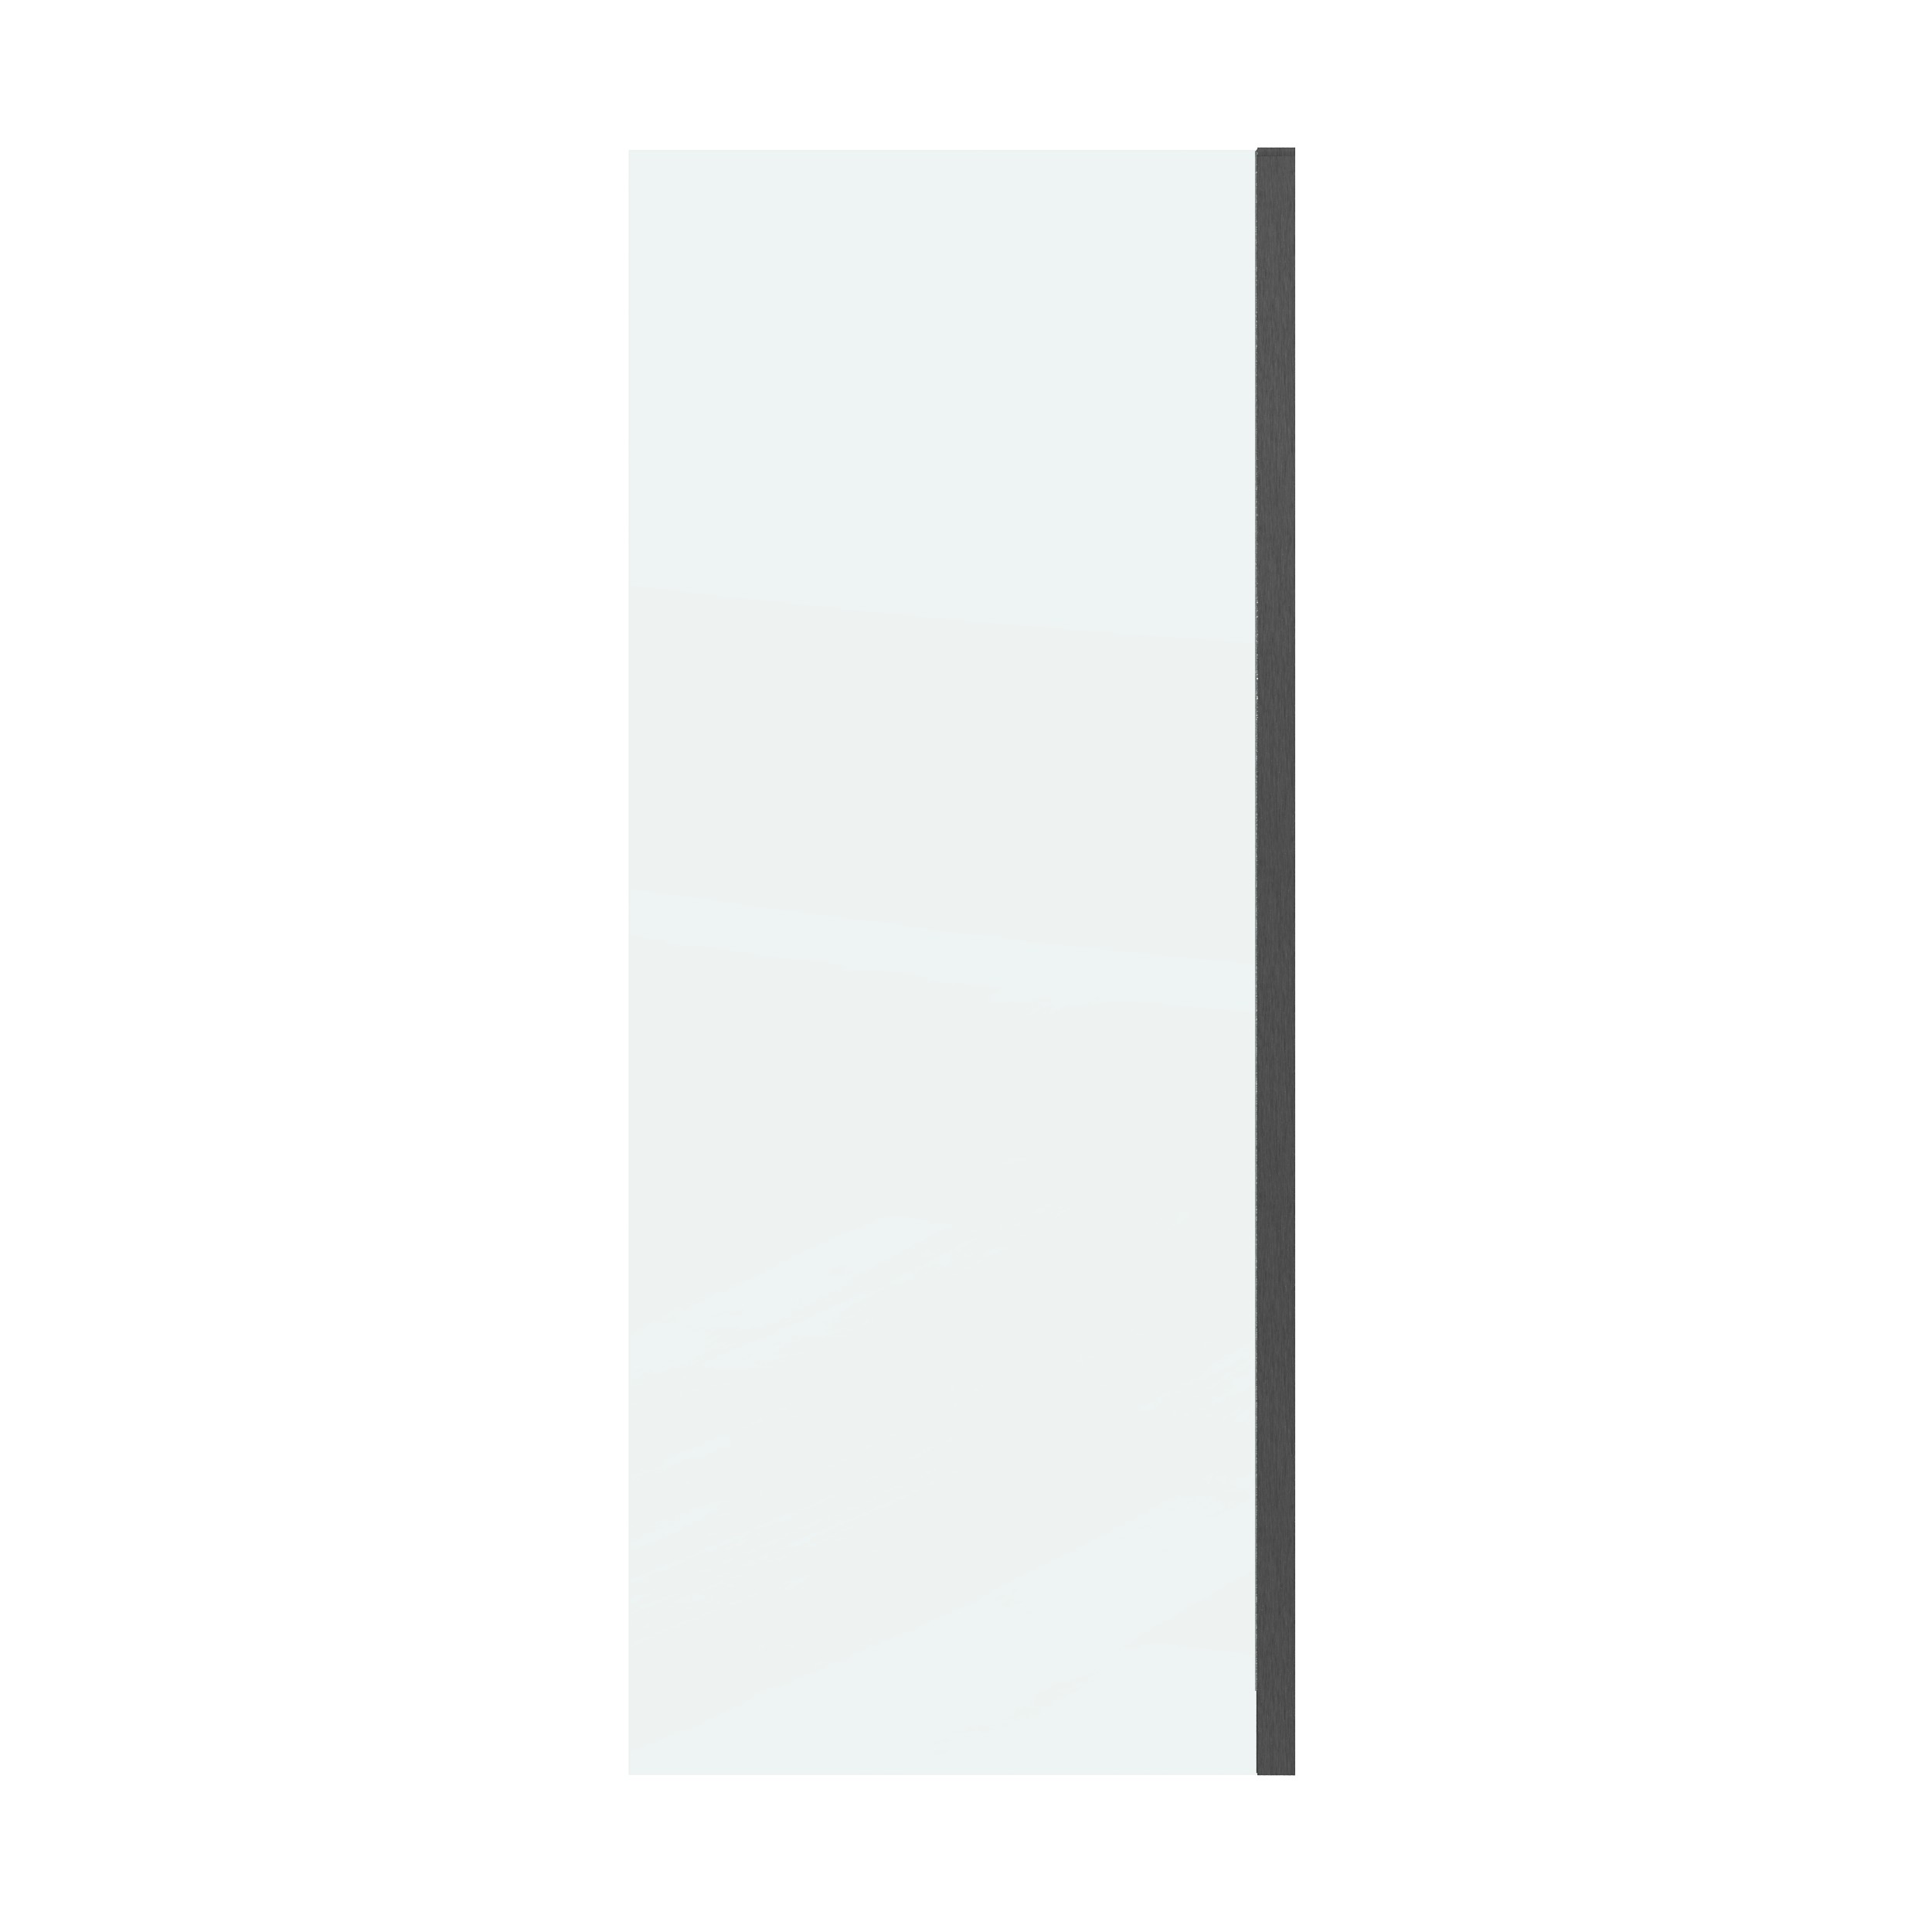 Боковая стенка Grossman Classic 80x195 200.K33.04.80.42.00 стекло прозрачное, профиль графит - фото 1